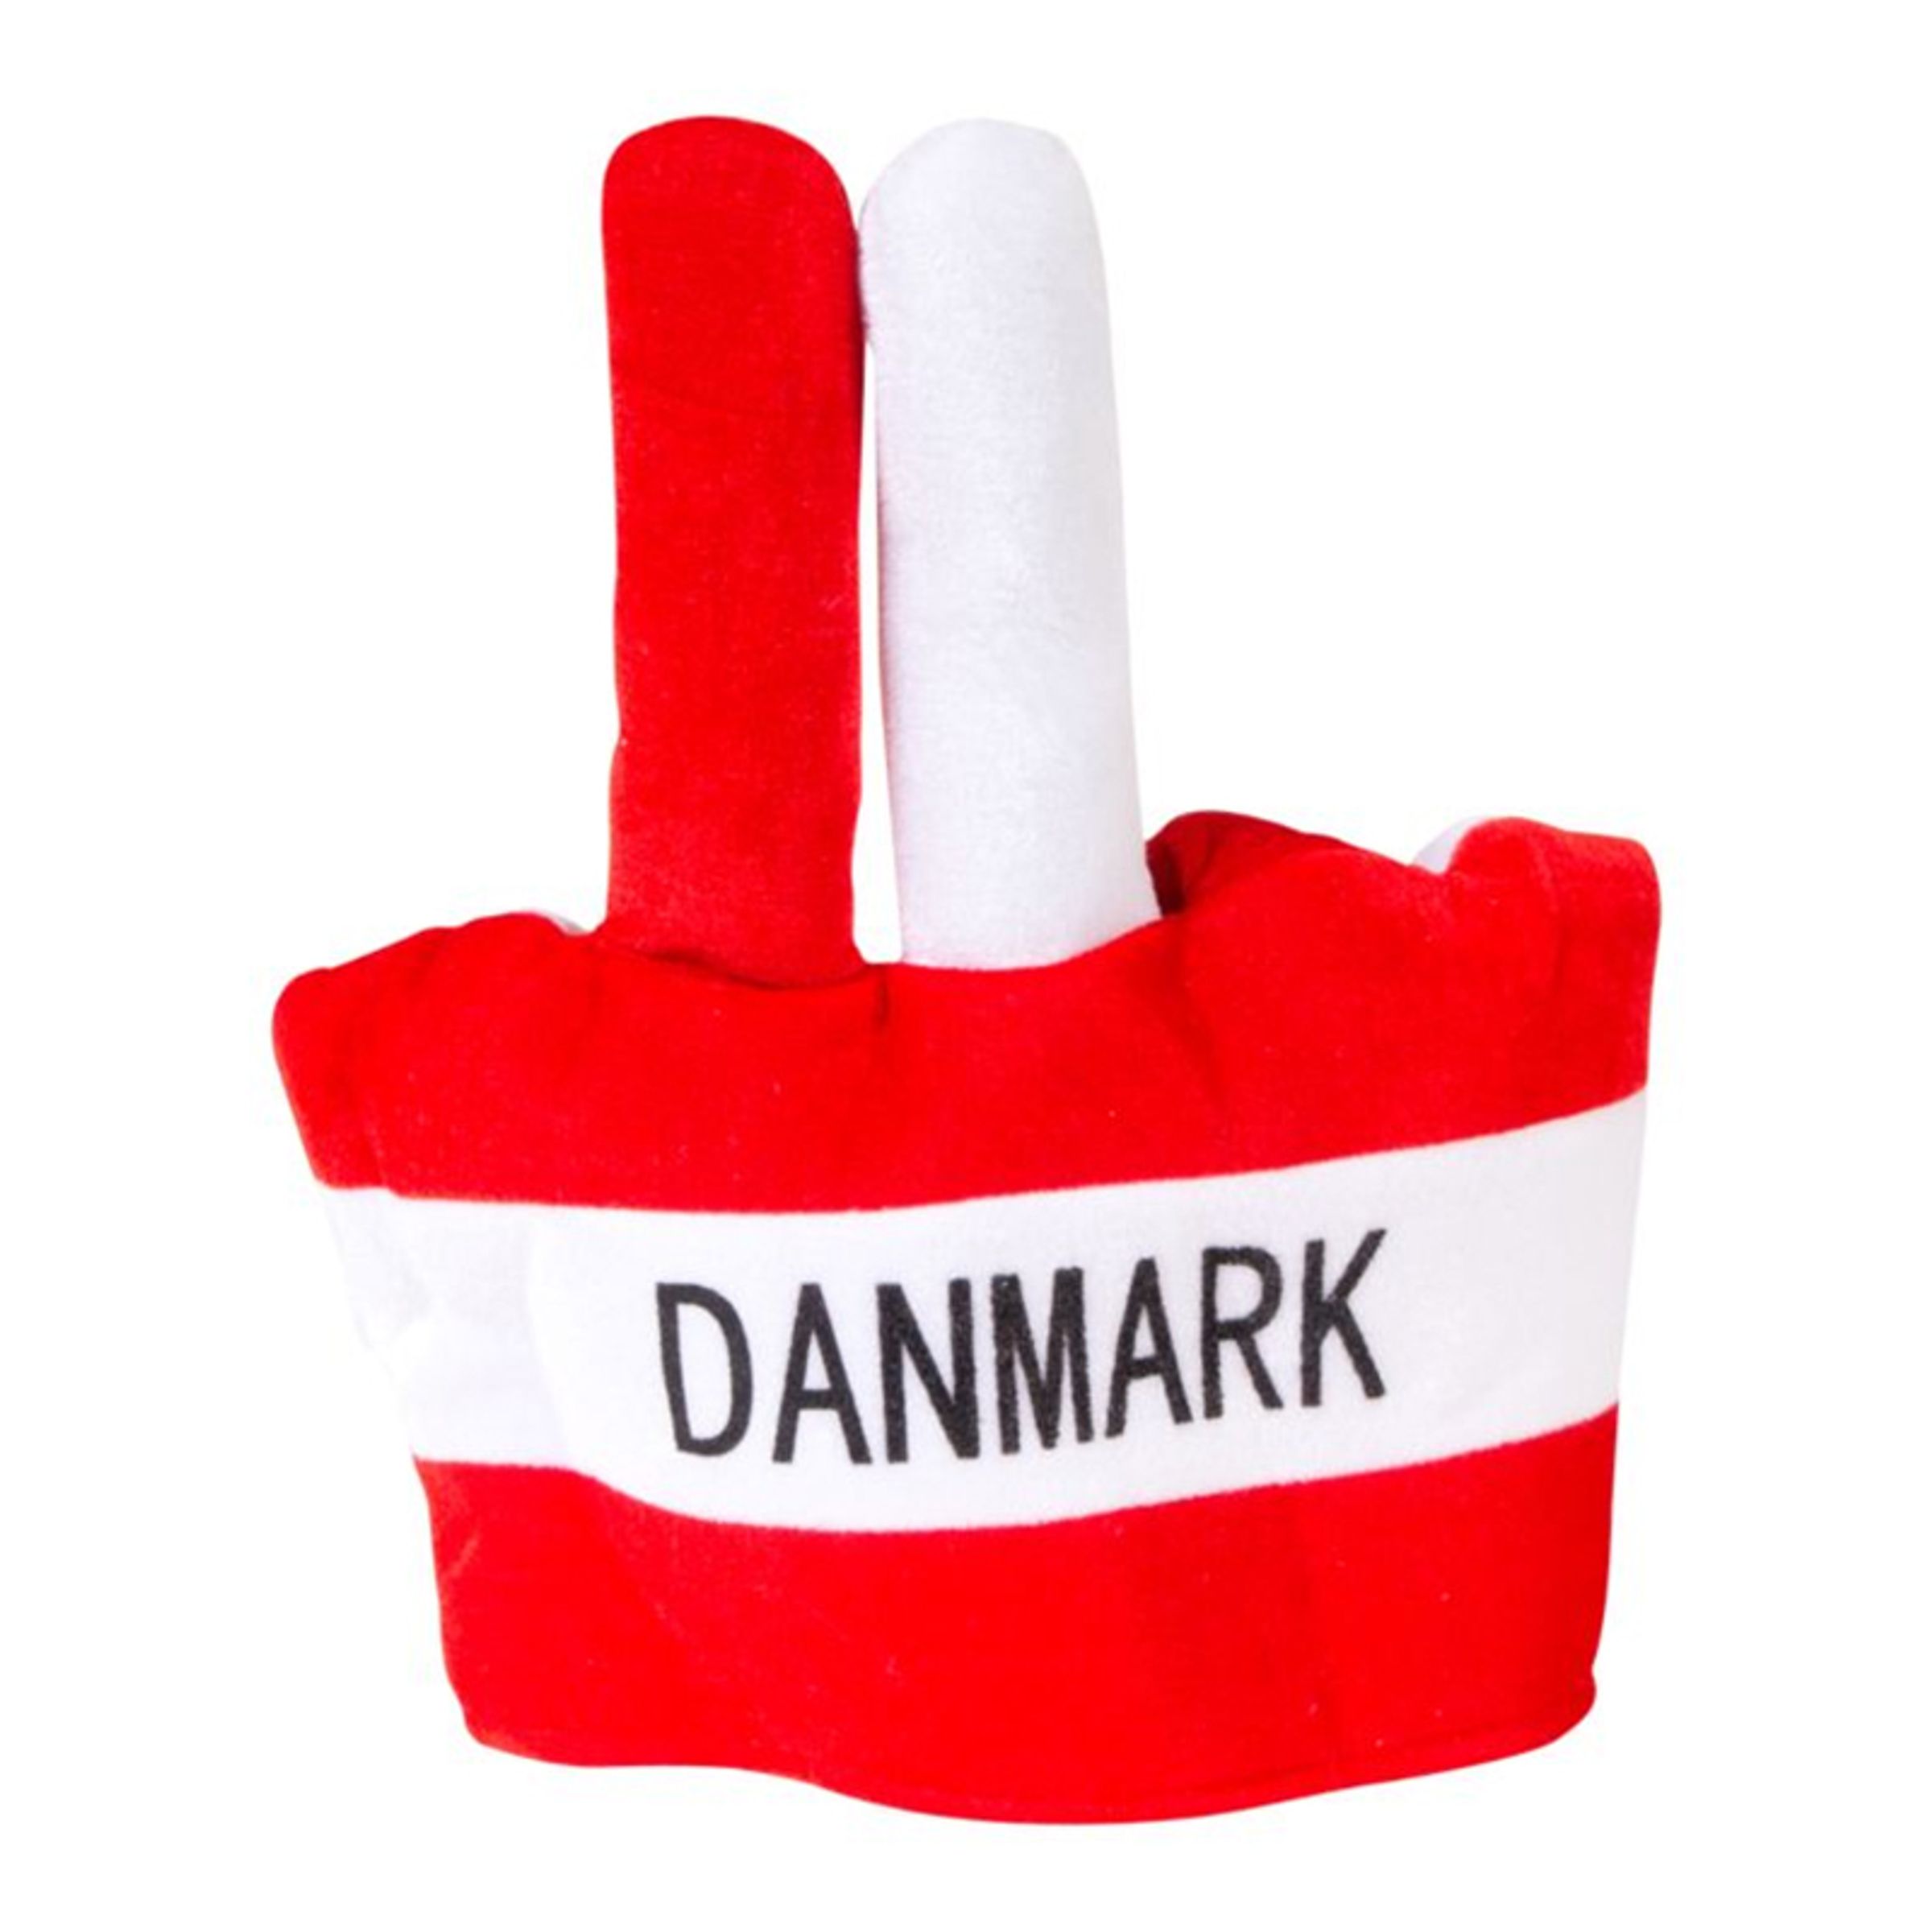 Supporterhatt Danmark med Fingrar - One size